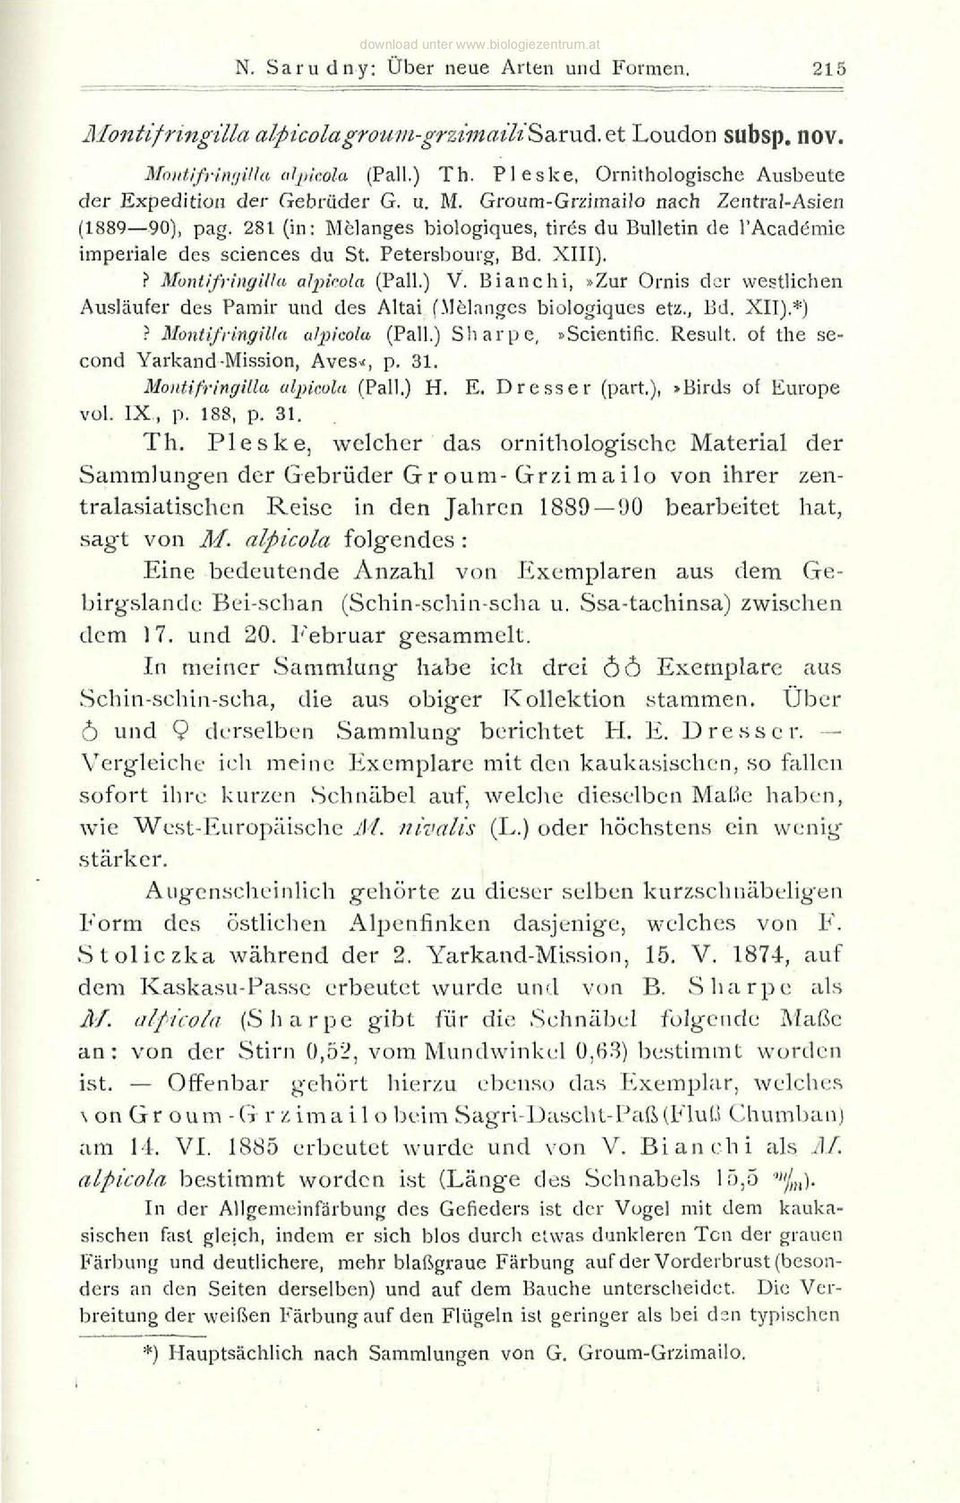 281 (in: Melanges biologiques, tires du Bulletin de l'academie imperiale des sciences du St. Petersbourg, Bd. XIII).? Montifringilla alpicola (Pall.) V.